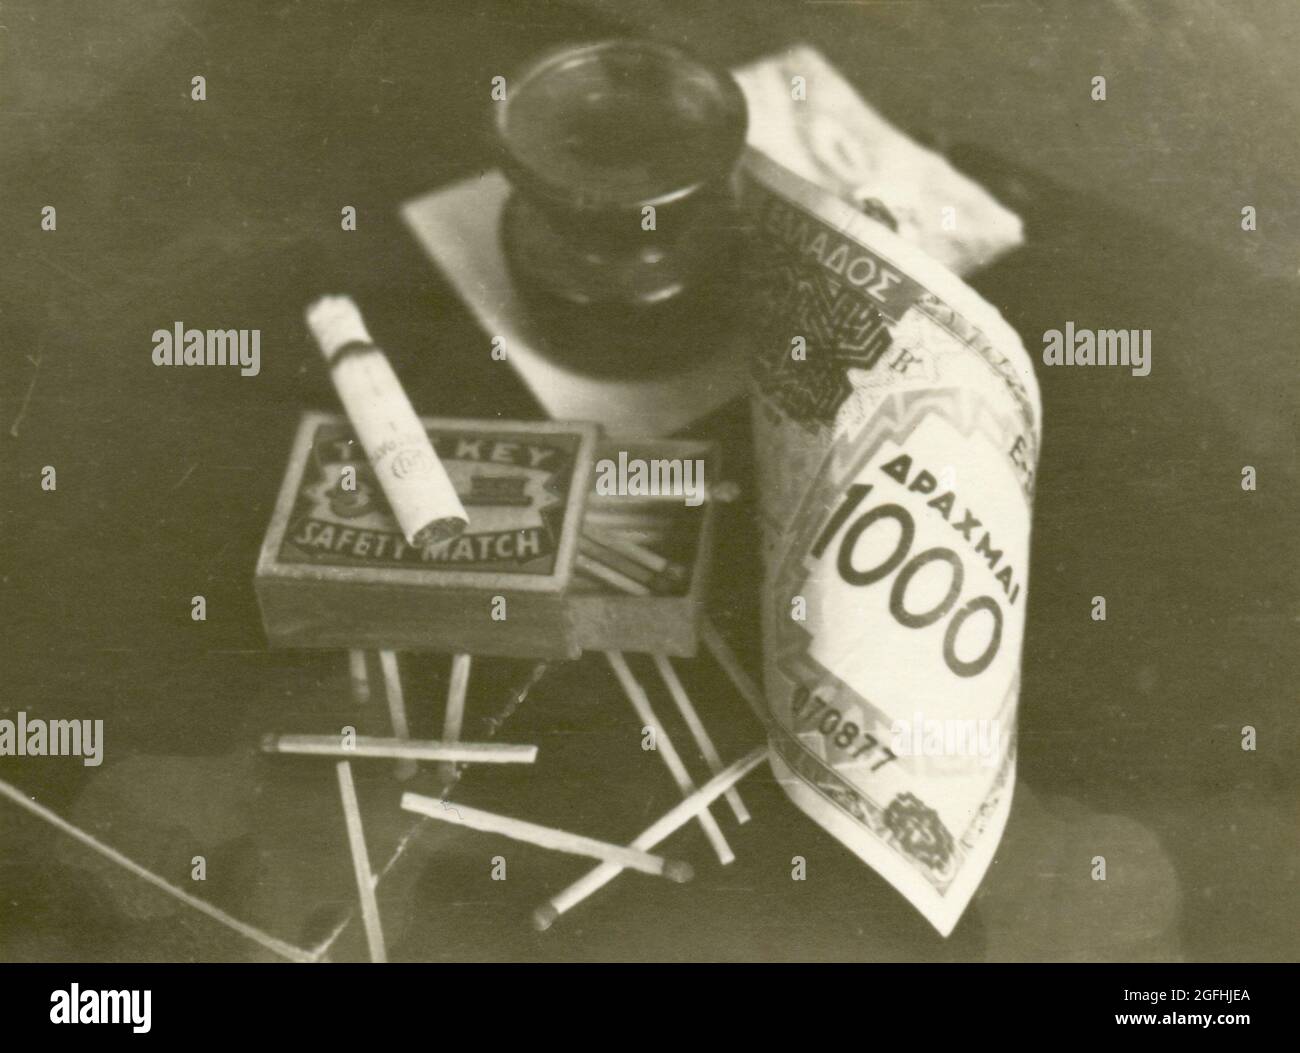 Conposizione con il denaro greco Drachma, partite, sigarette, e inkwell, 1940 Foto Stock